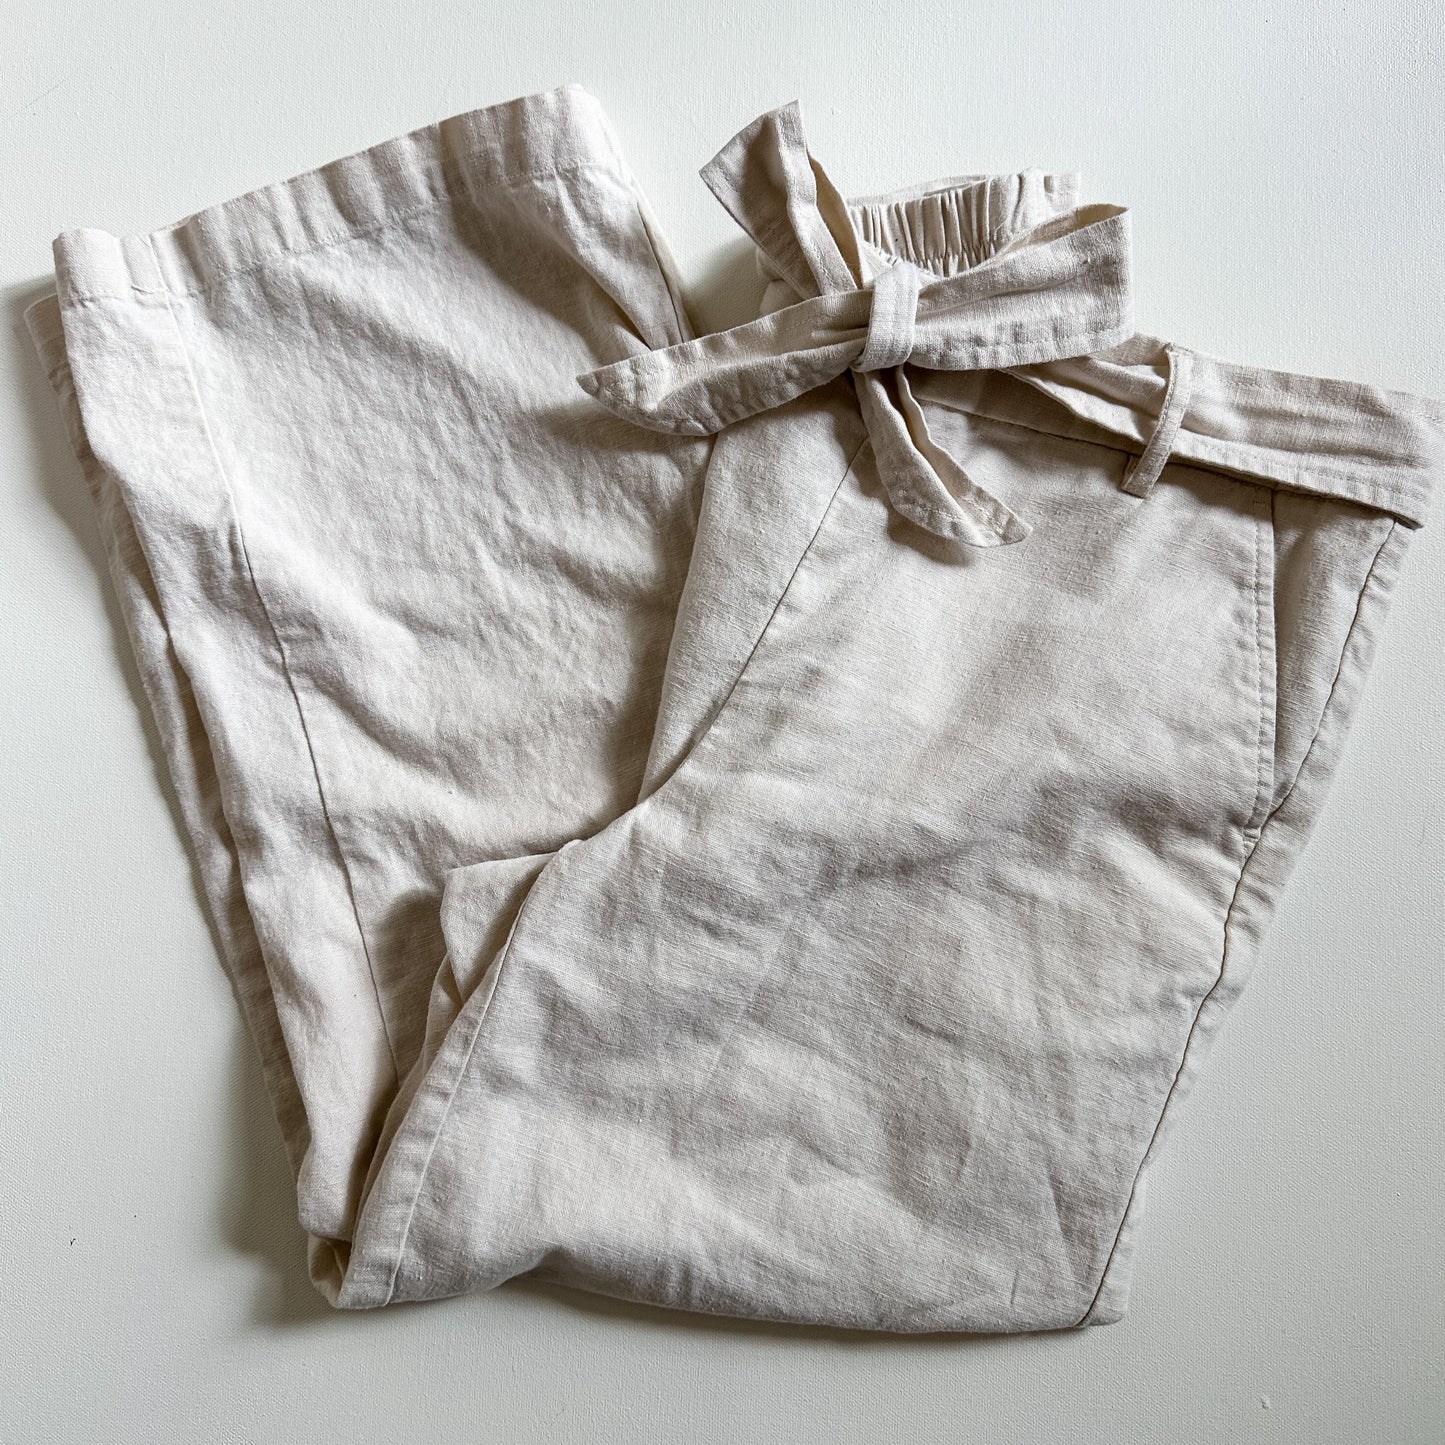 J. Crew Linen Blend Tie Front Cropped Wide Leg Pants (size 6)